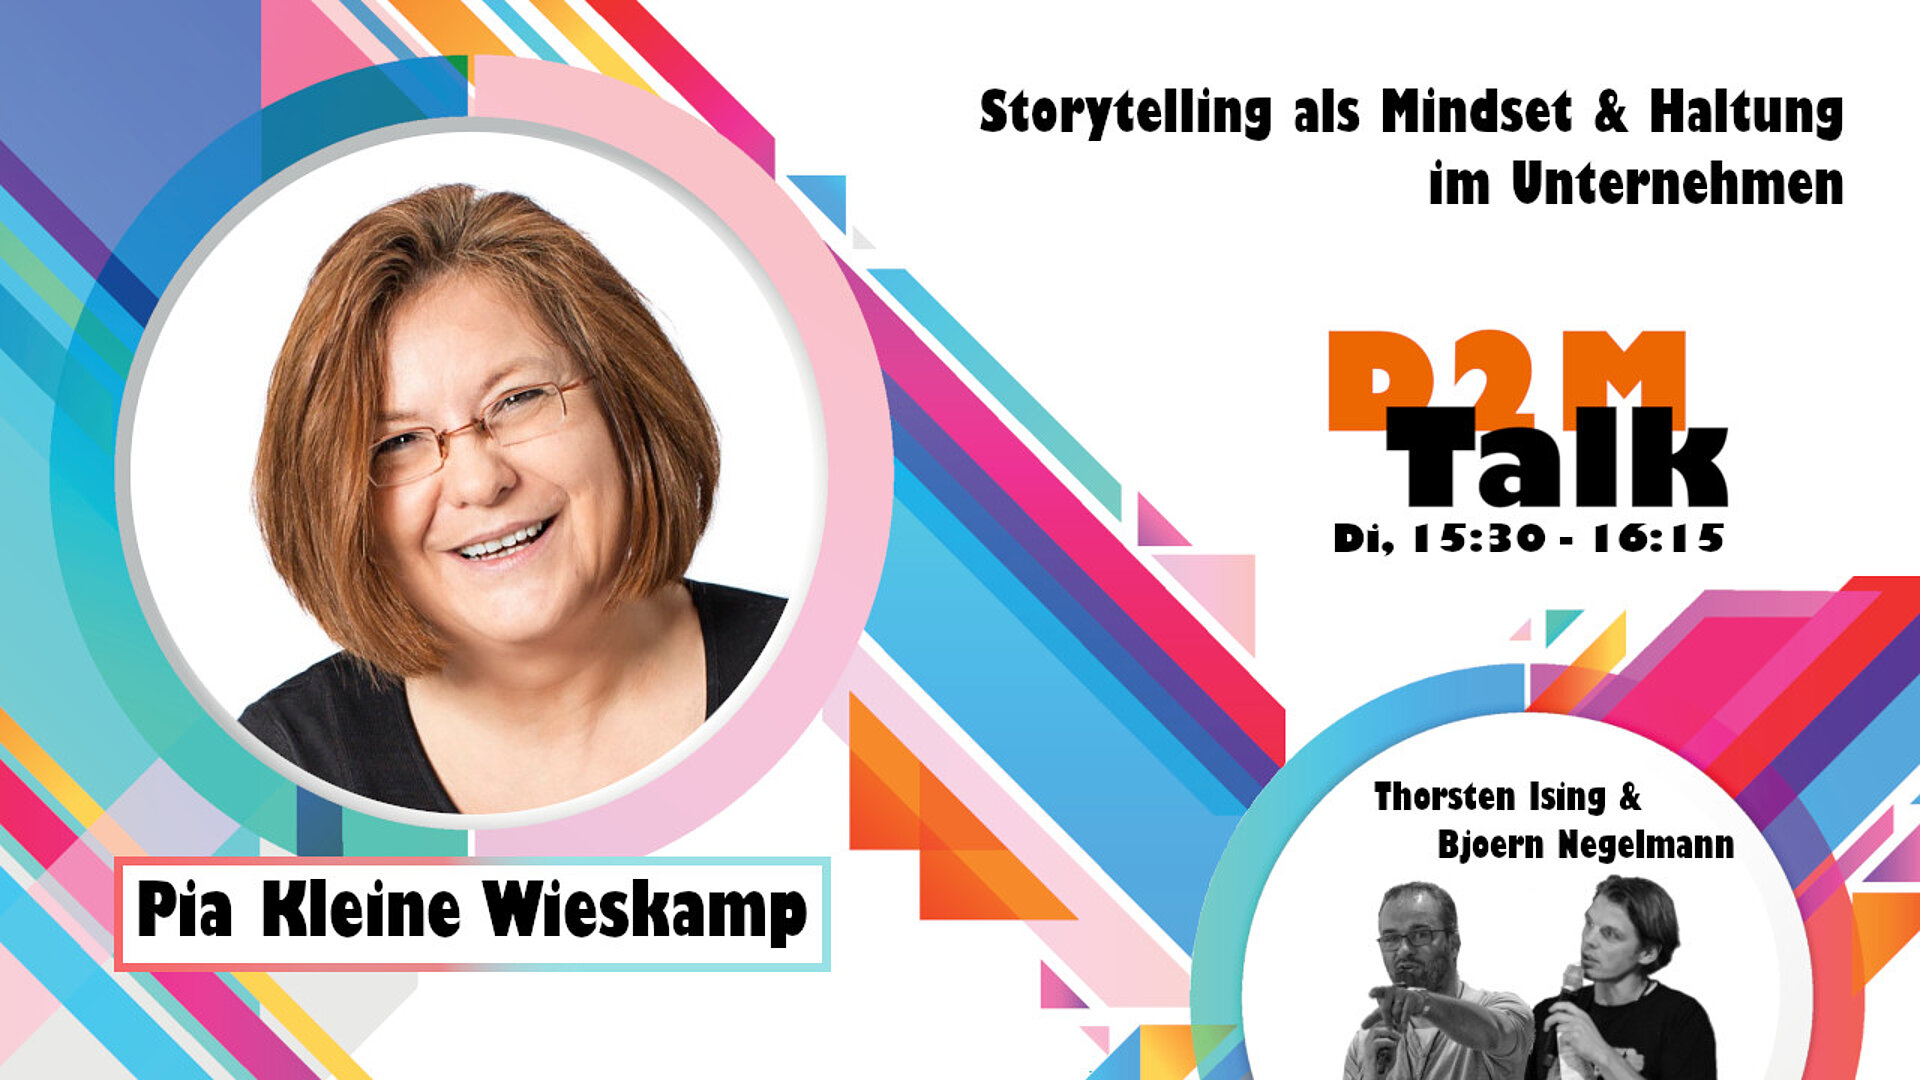 Im Gespräch mit Pia Kleine Wieskamp über Storytelling als Mindset